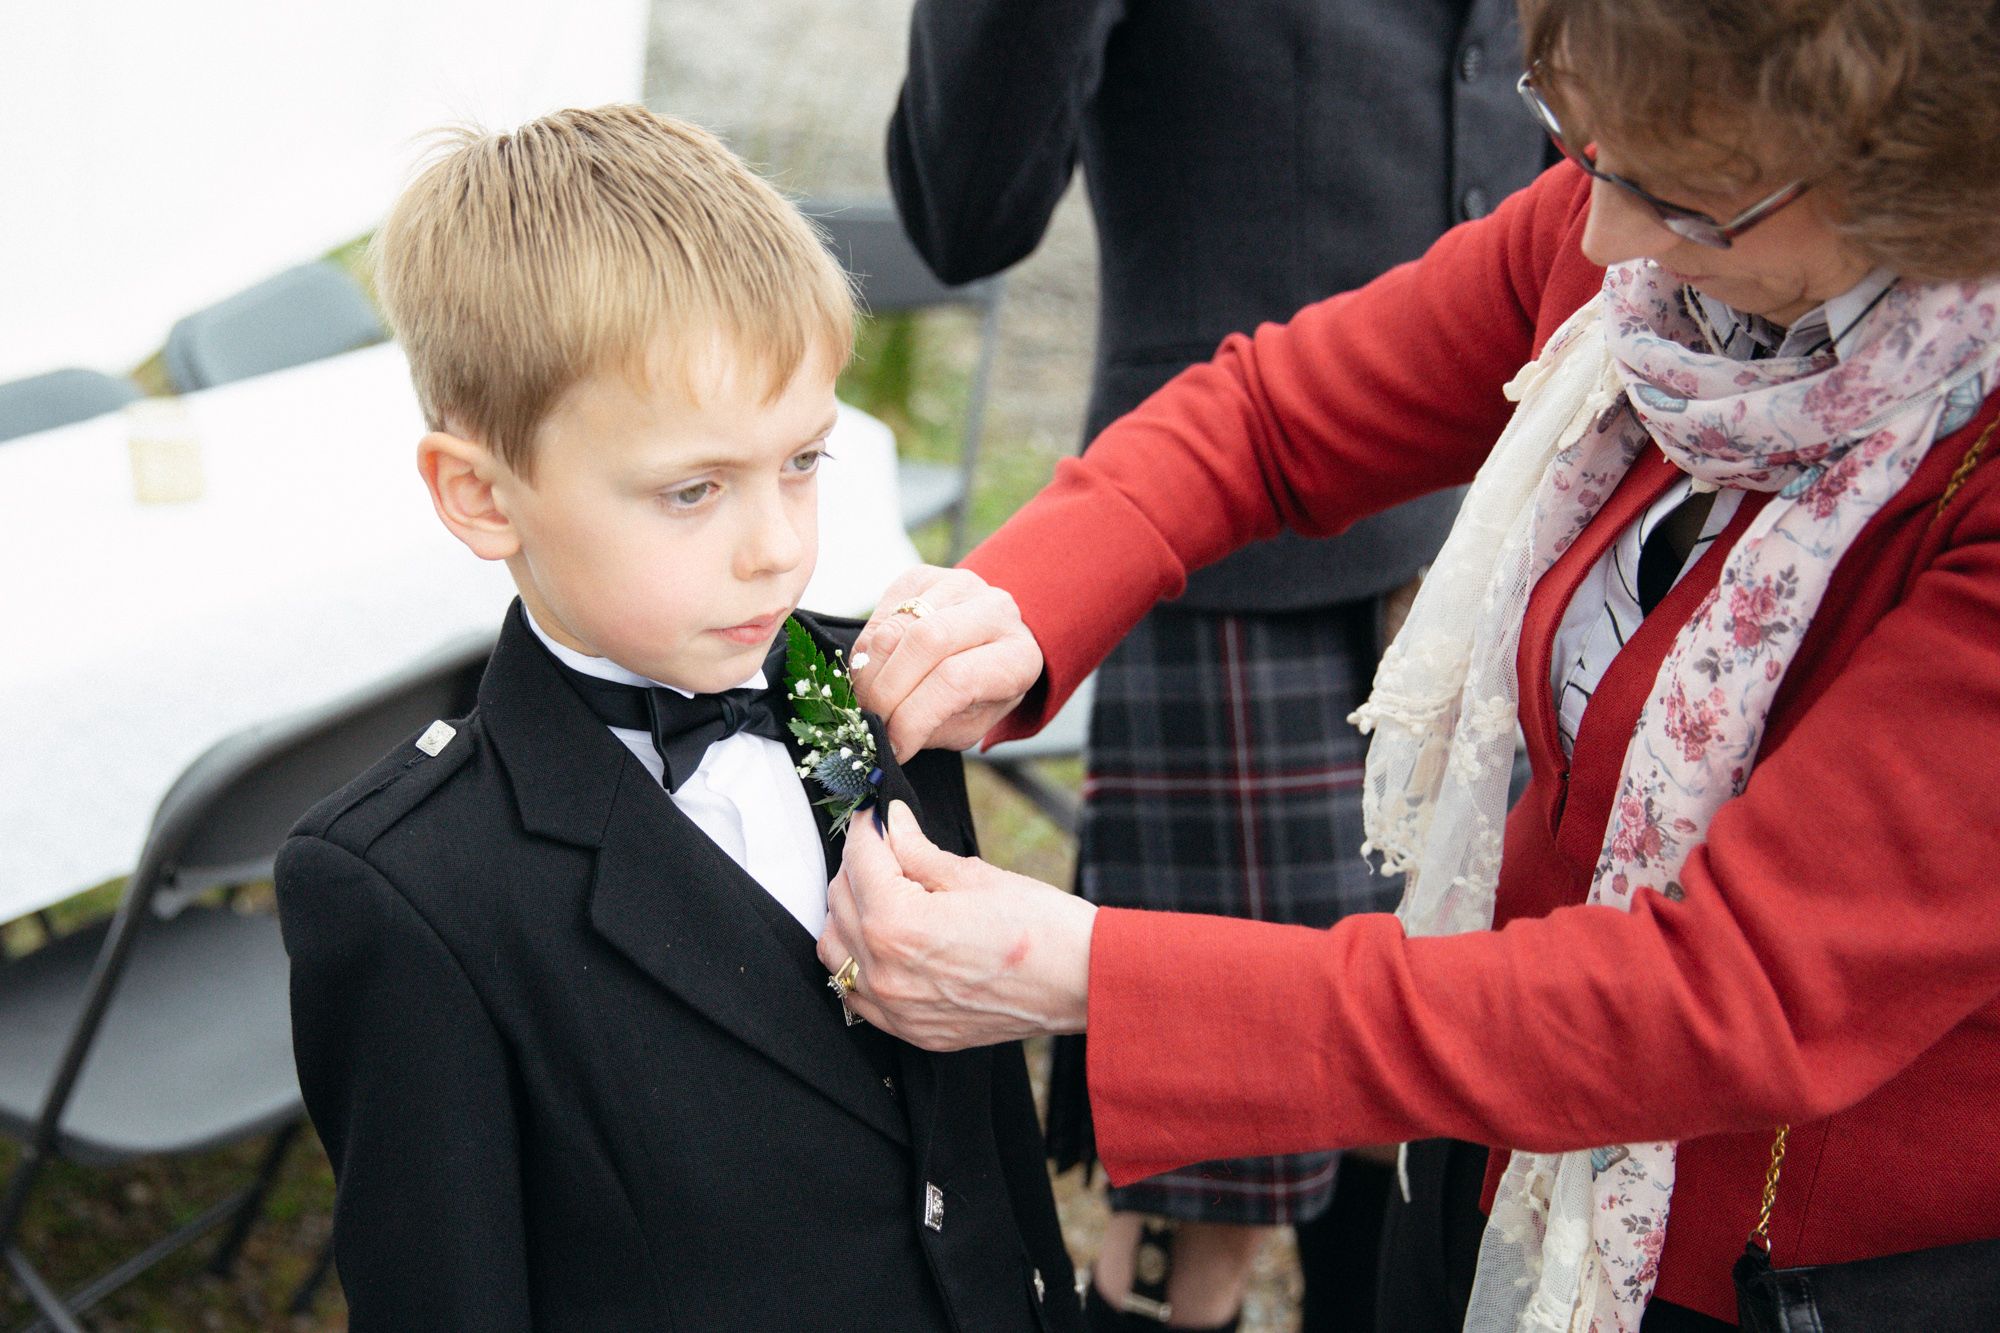 Boy getting ready for wedding